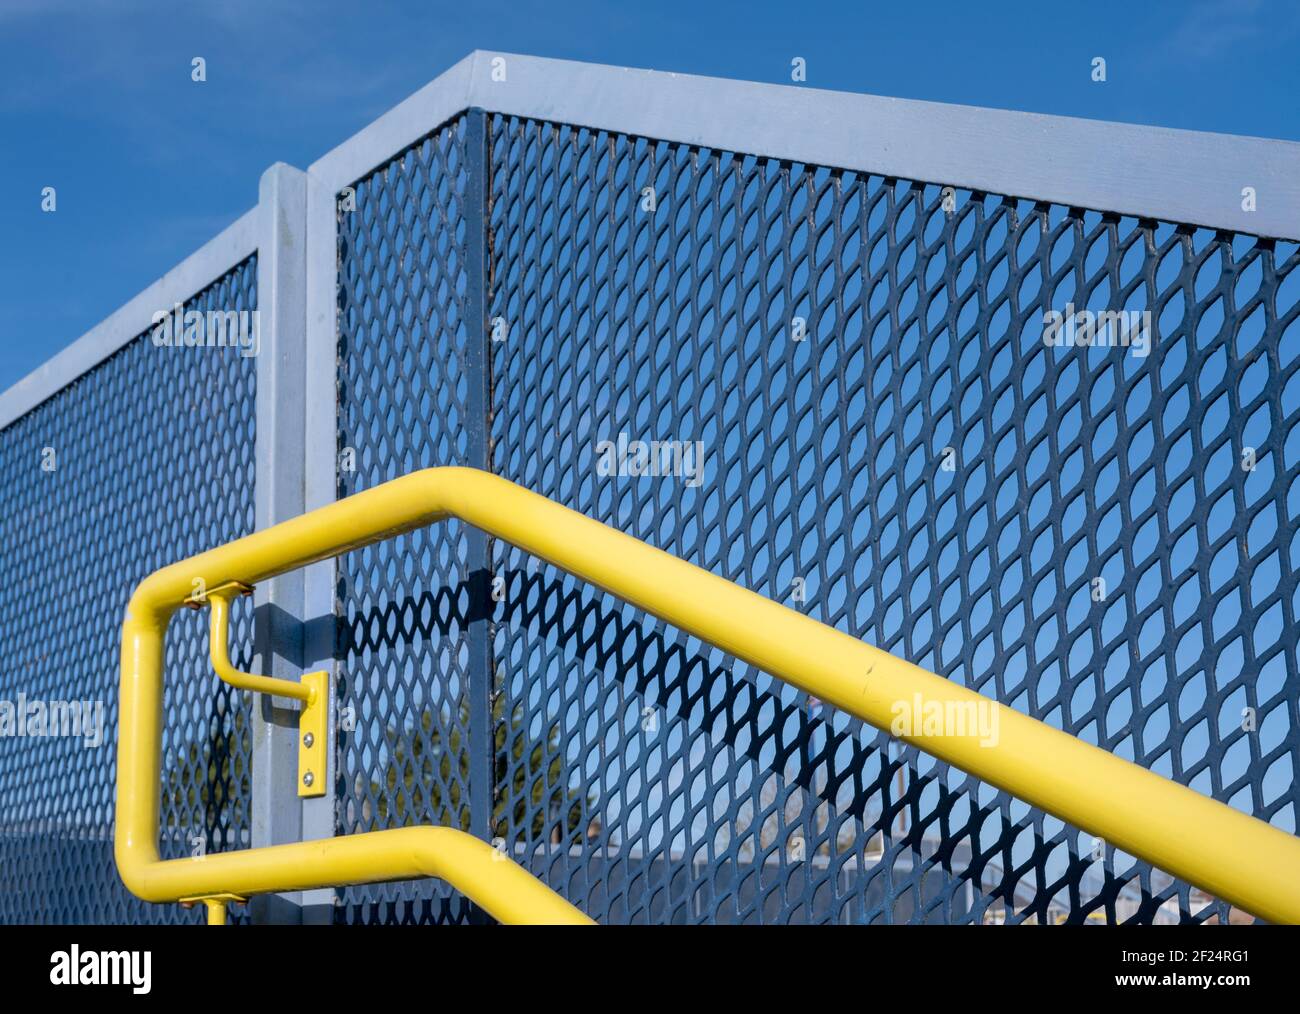 Corrimano giallo contro una recinzione con maglie blu. Foto Stock